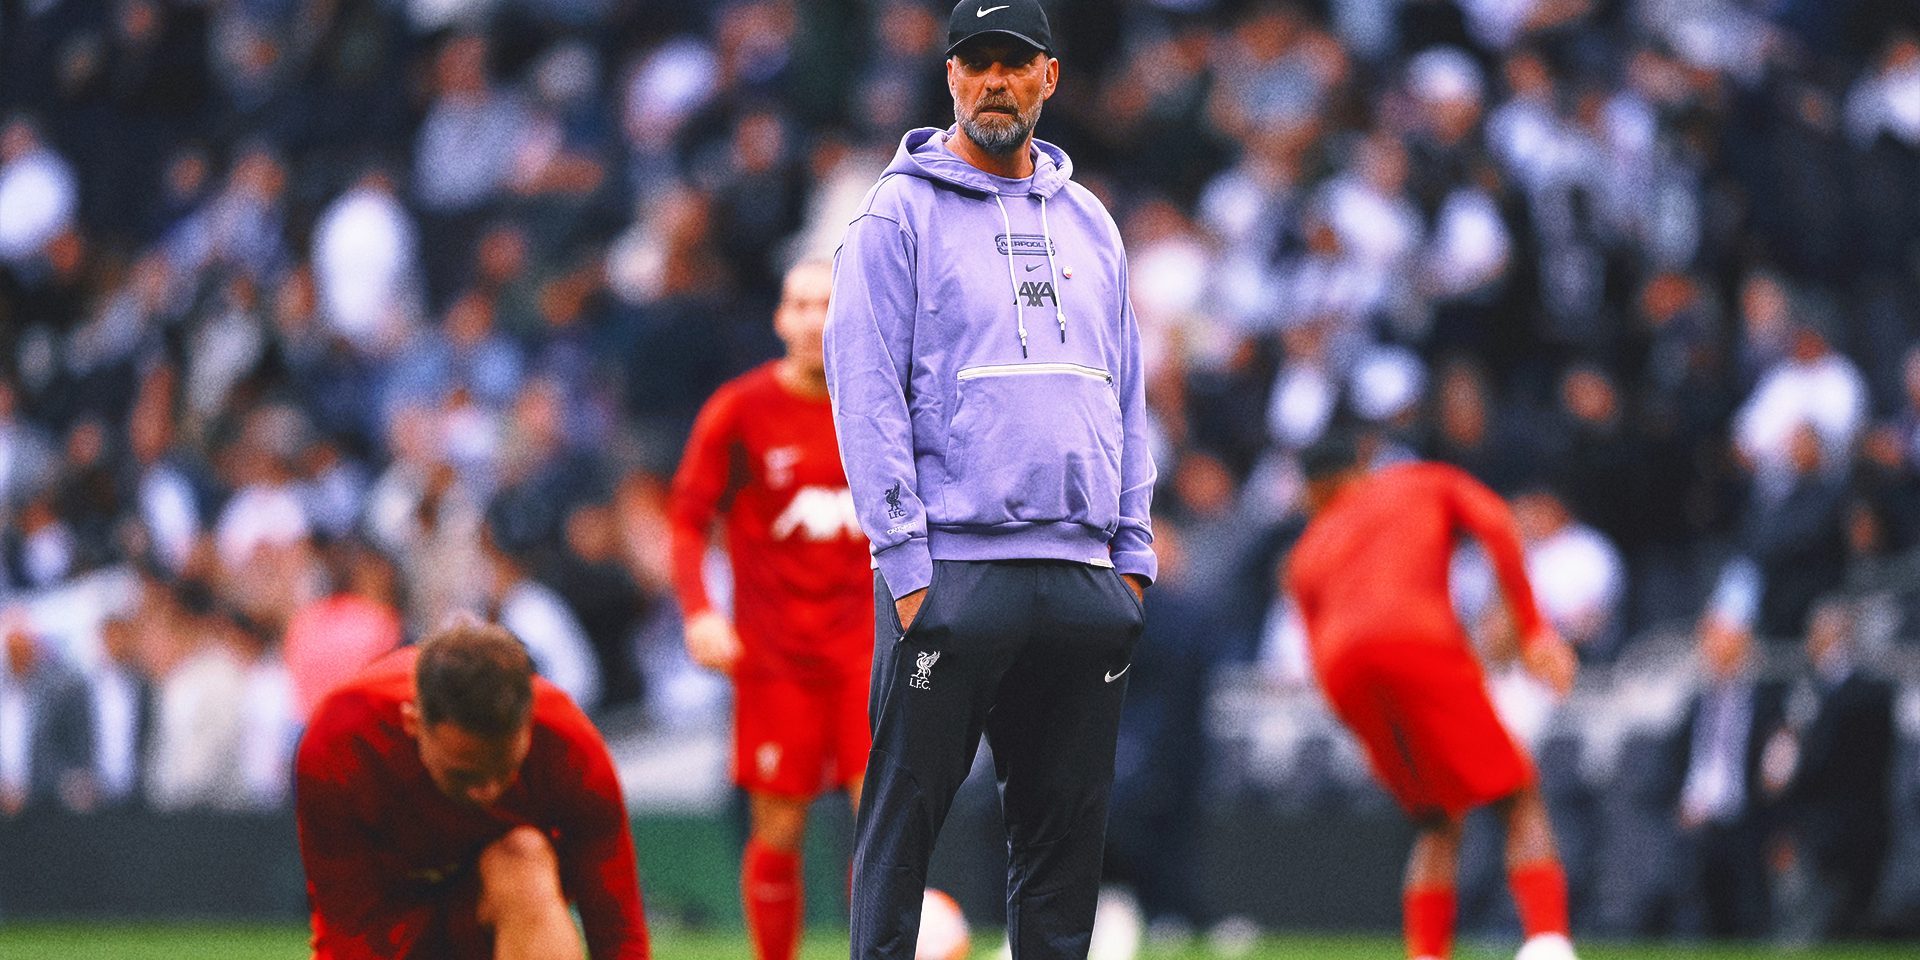 Liverpool manager Jurgen Klopp wants replay of Tottenham match after 'unprecedented' VAR error